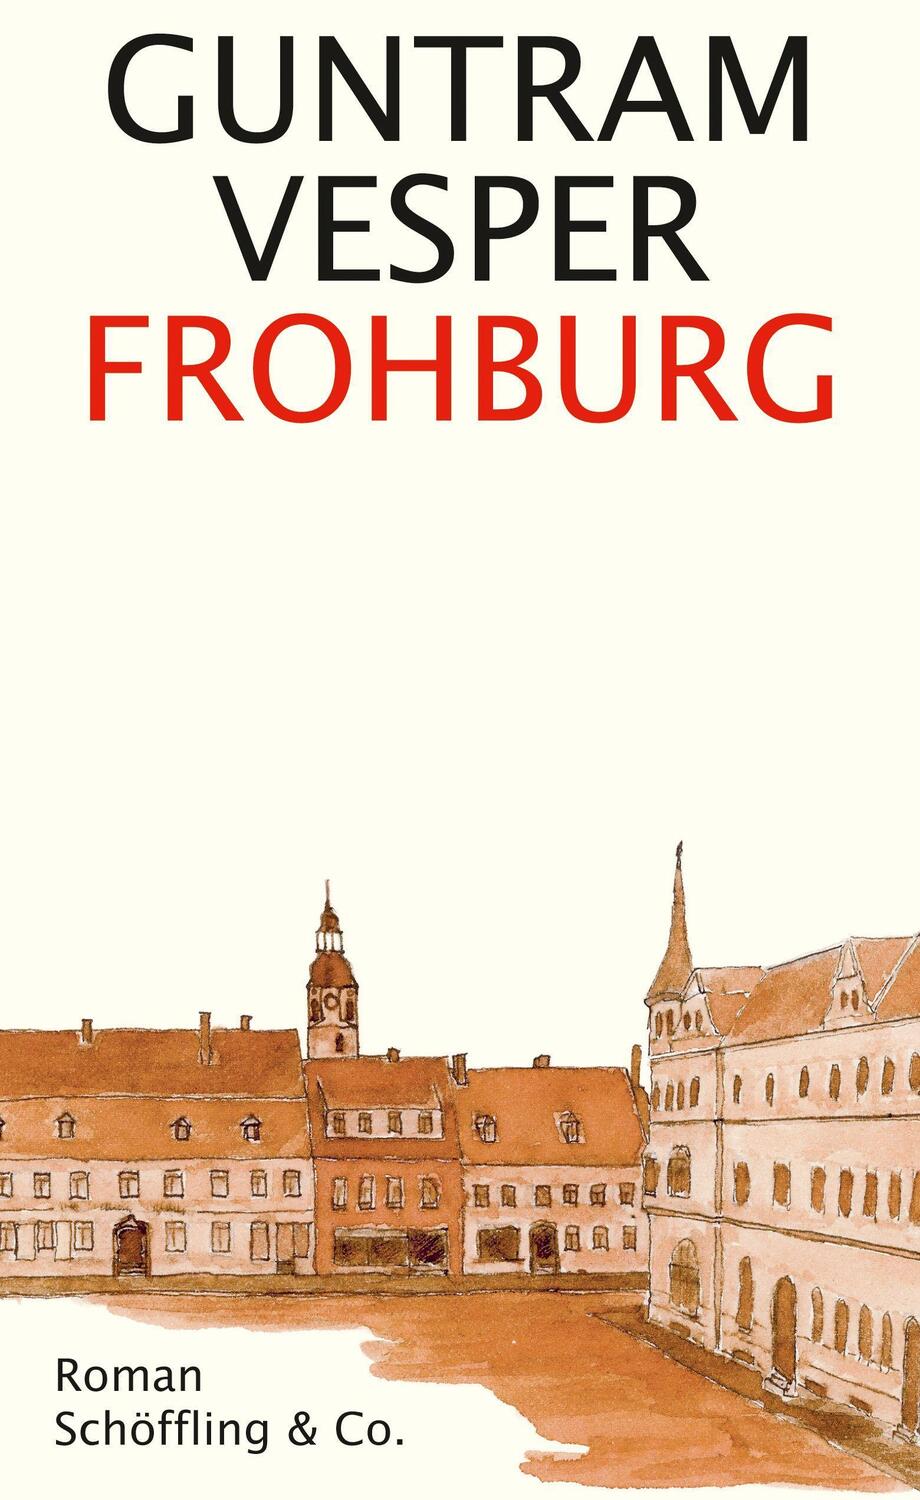 Frohburg - Vesper, Guntram